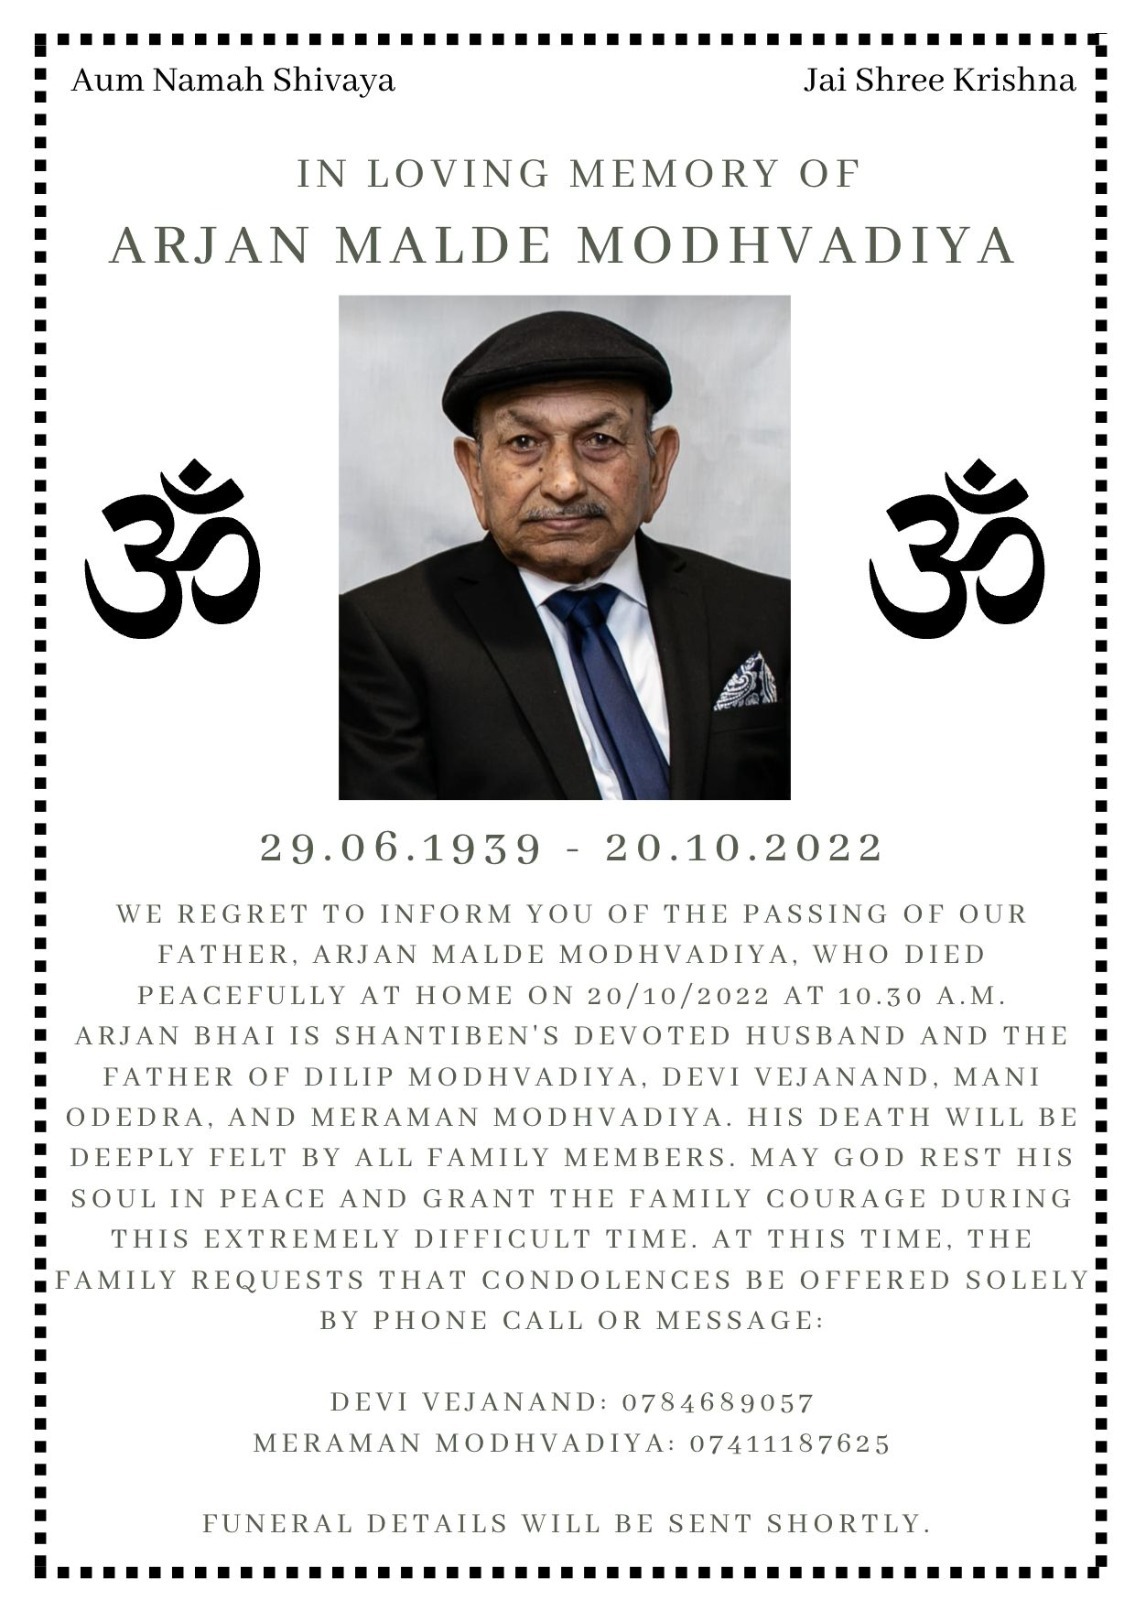 Arjan Malde Modhwadia passed away